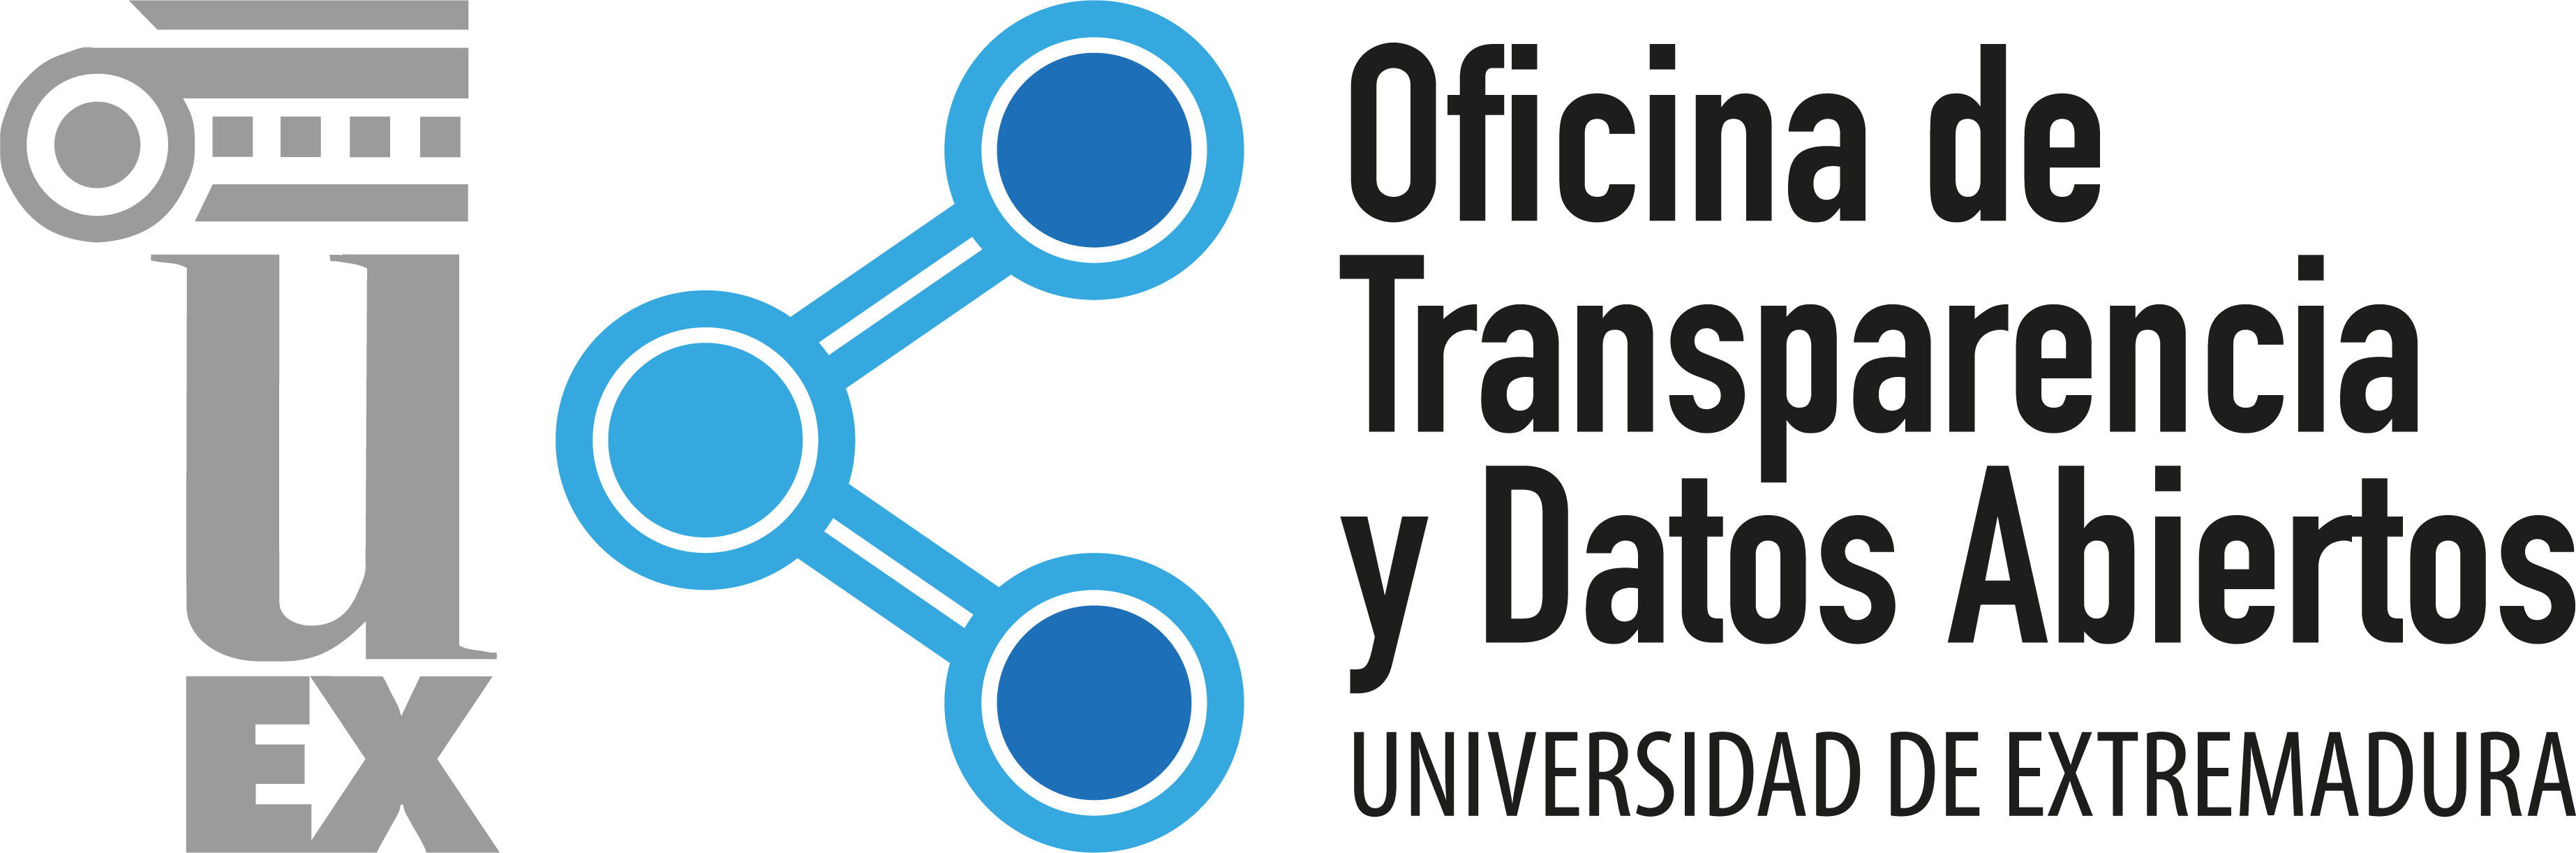 Oficina de Transparencia y Datos Abiertos de la UEx